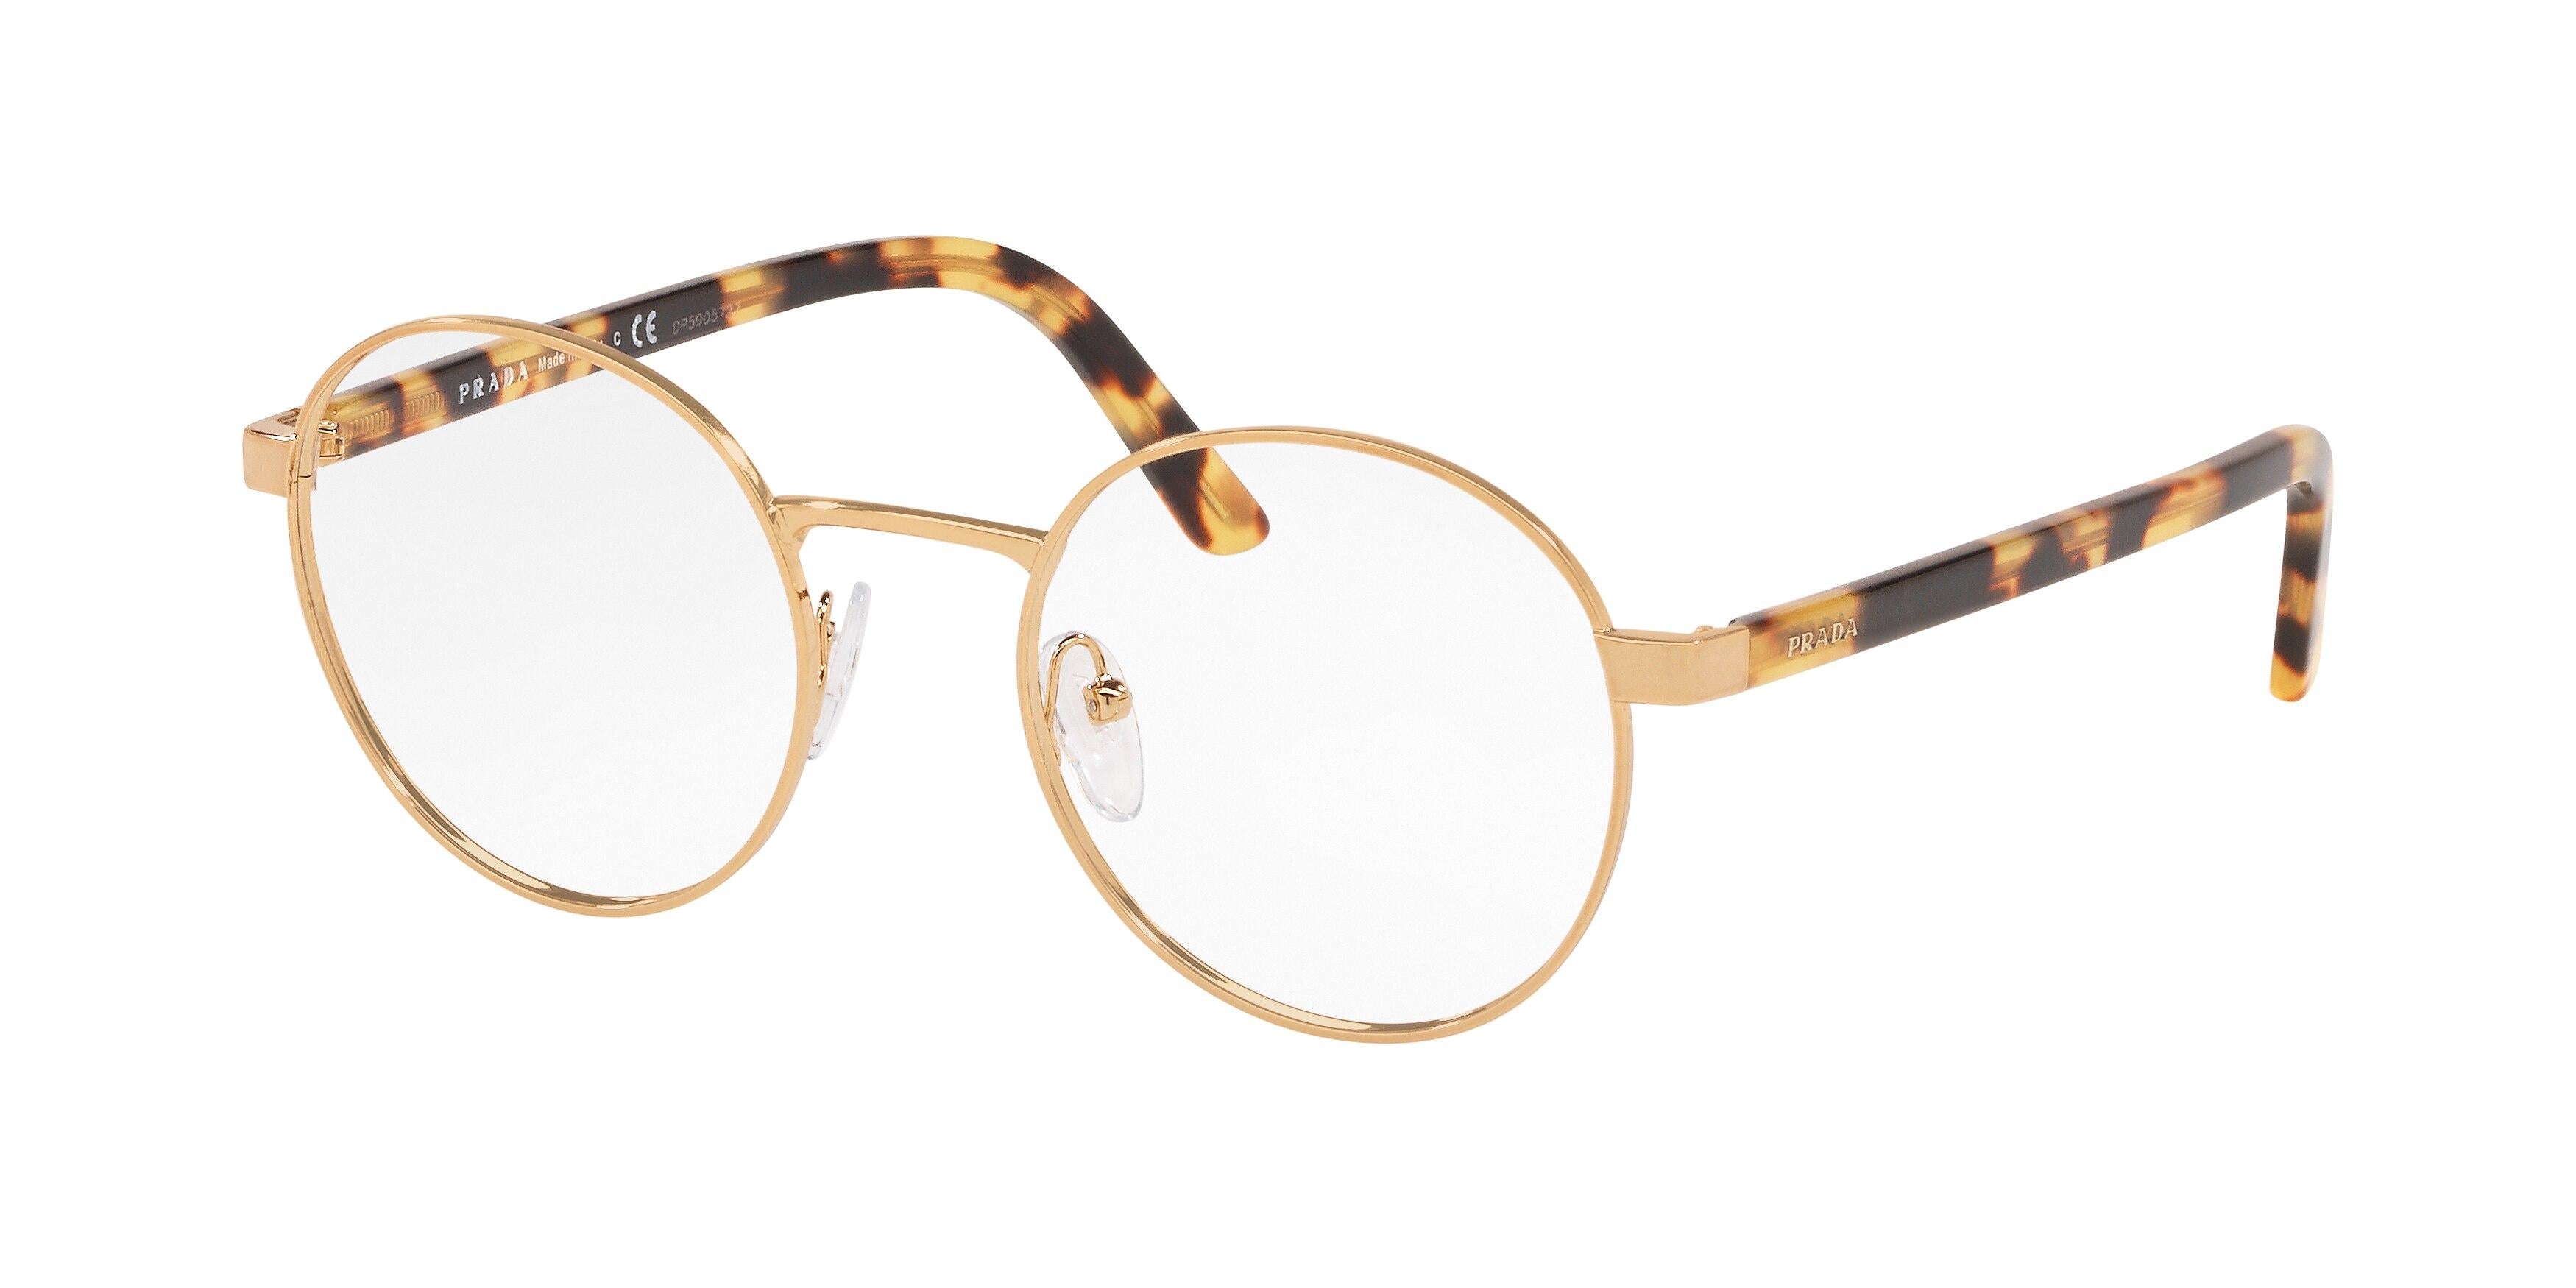 Prada Heritage 52XV Eyeglasses – 